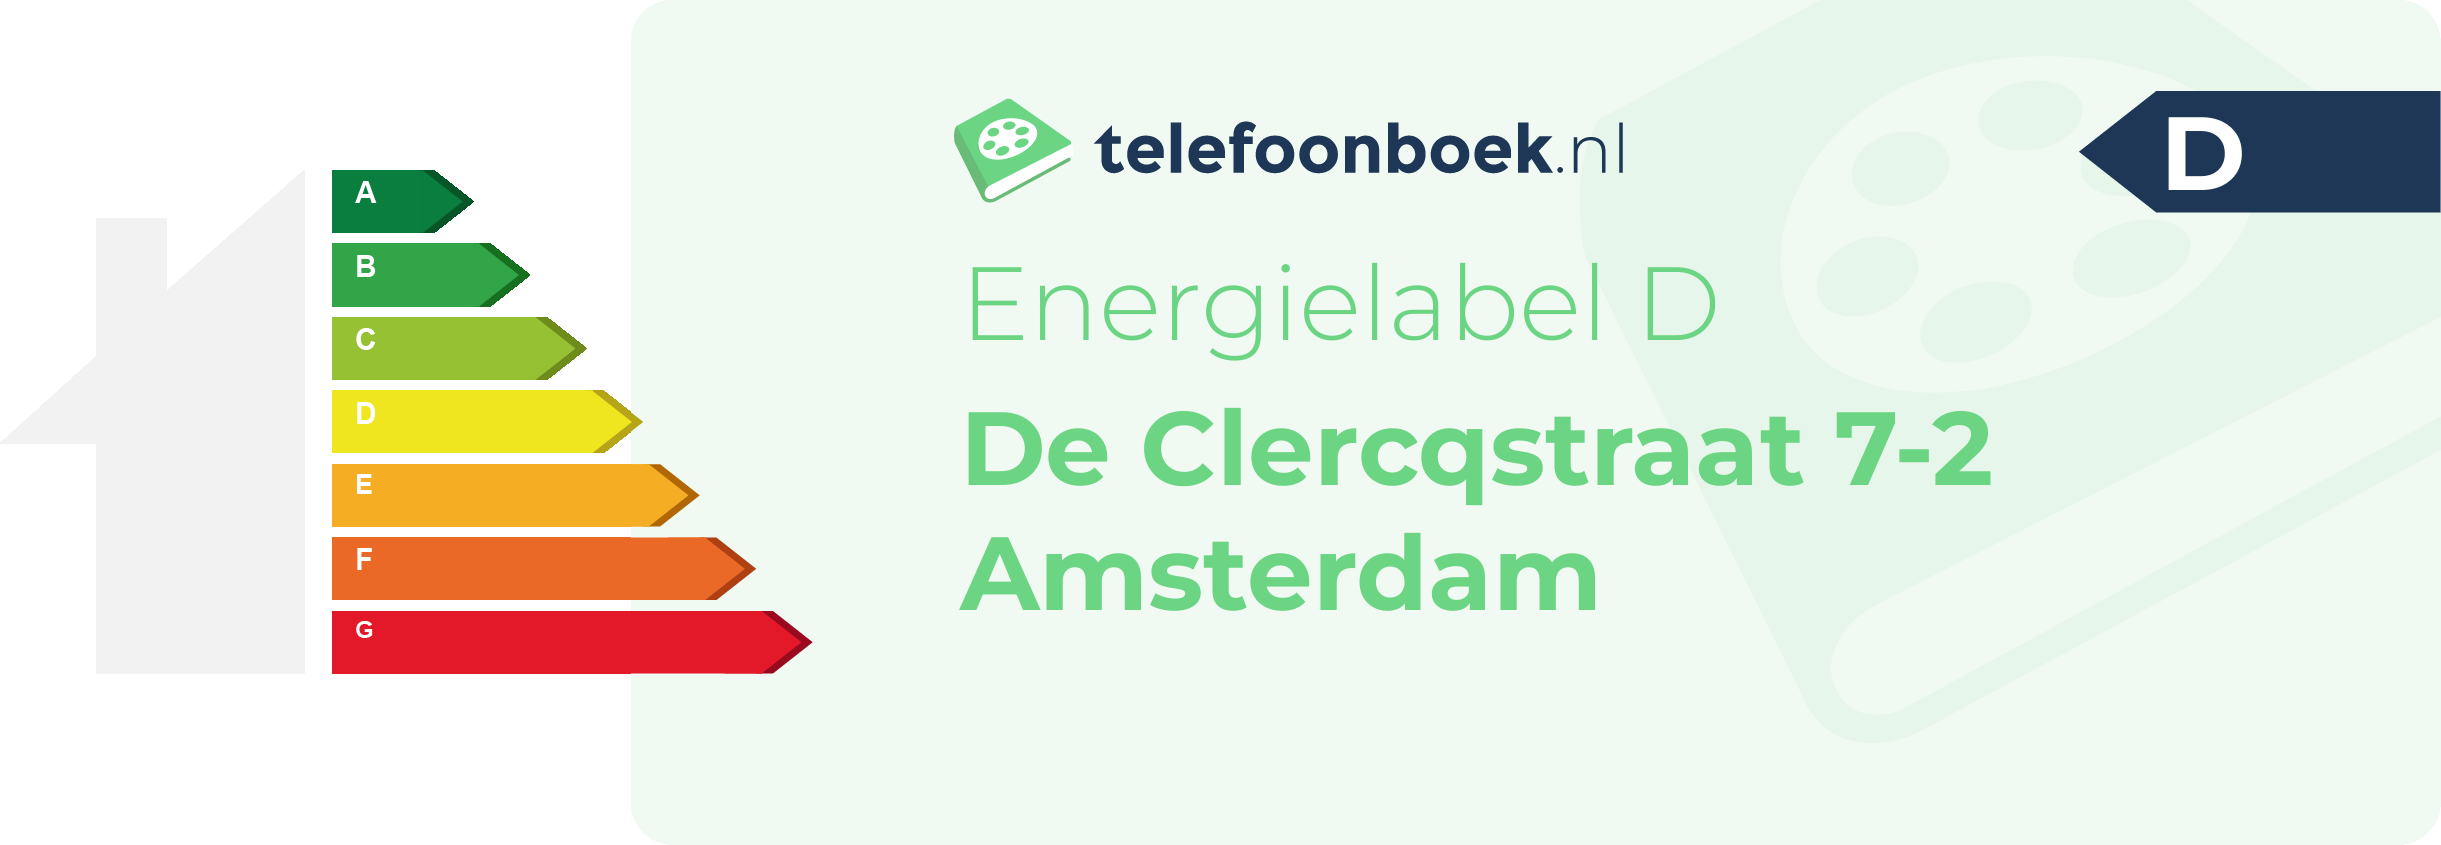 Energielabel De Clercqstraat 7-2 Amsterdam